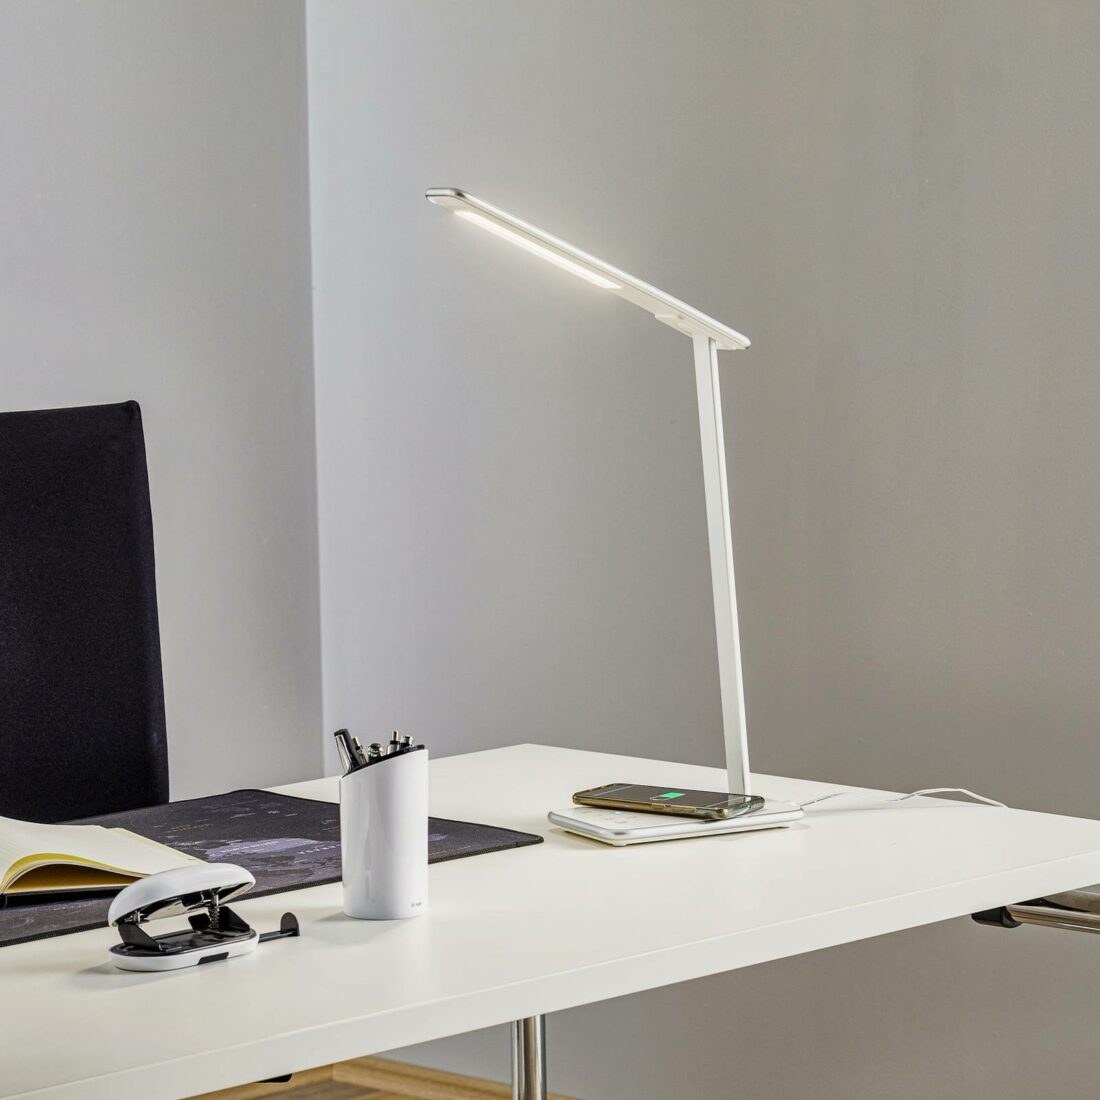 Aluminor LED stolní lampa Orbit s indukcí sříbrná